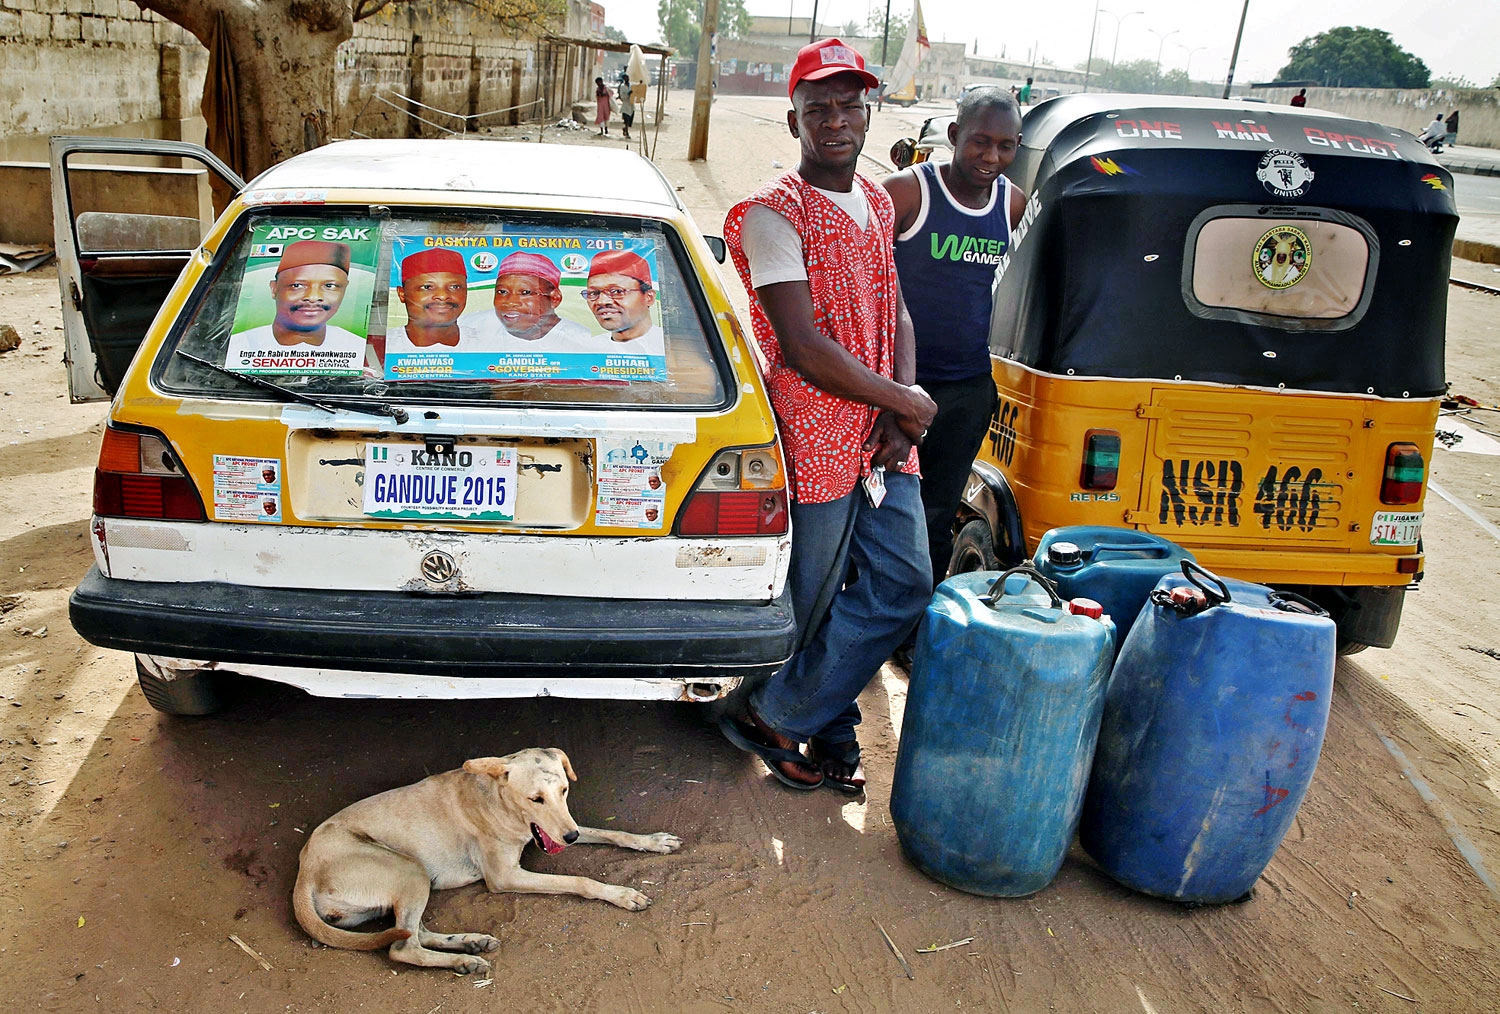 Buhari-plakát egy utcai benzinárusnál